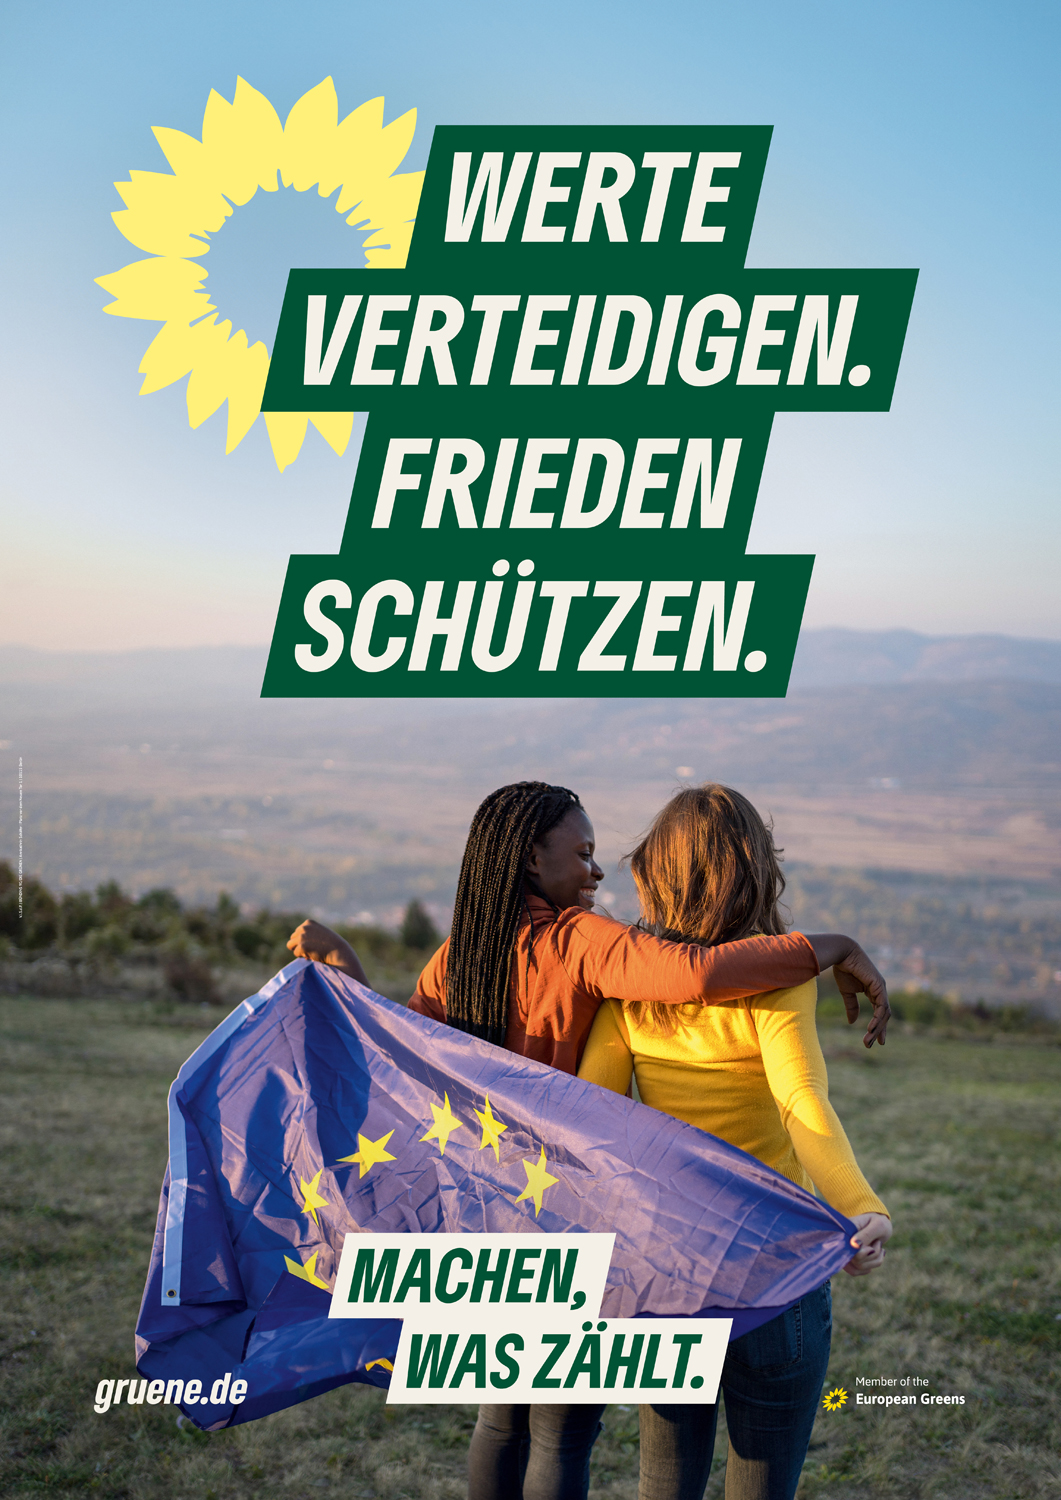 Wahlplakat der Partei Die Grünen zur Europawahl 2024. Es zeigt zwei Menschen, von denen einer den Arm um den anderen legt. Sie haben eine Europafahne über der Schulter. Oben steht groß 'Werte verteidigen, Frieden schützen' und unten 'Machen, was zählt'.